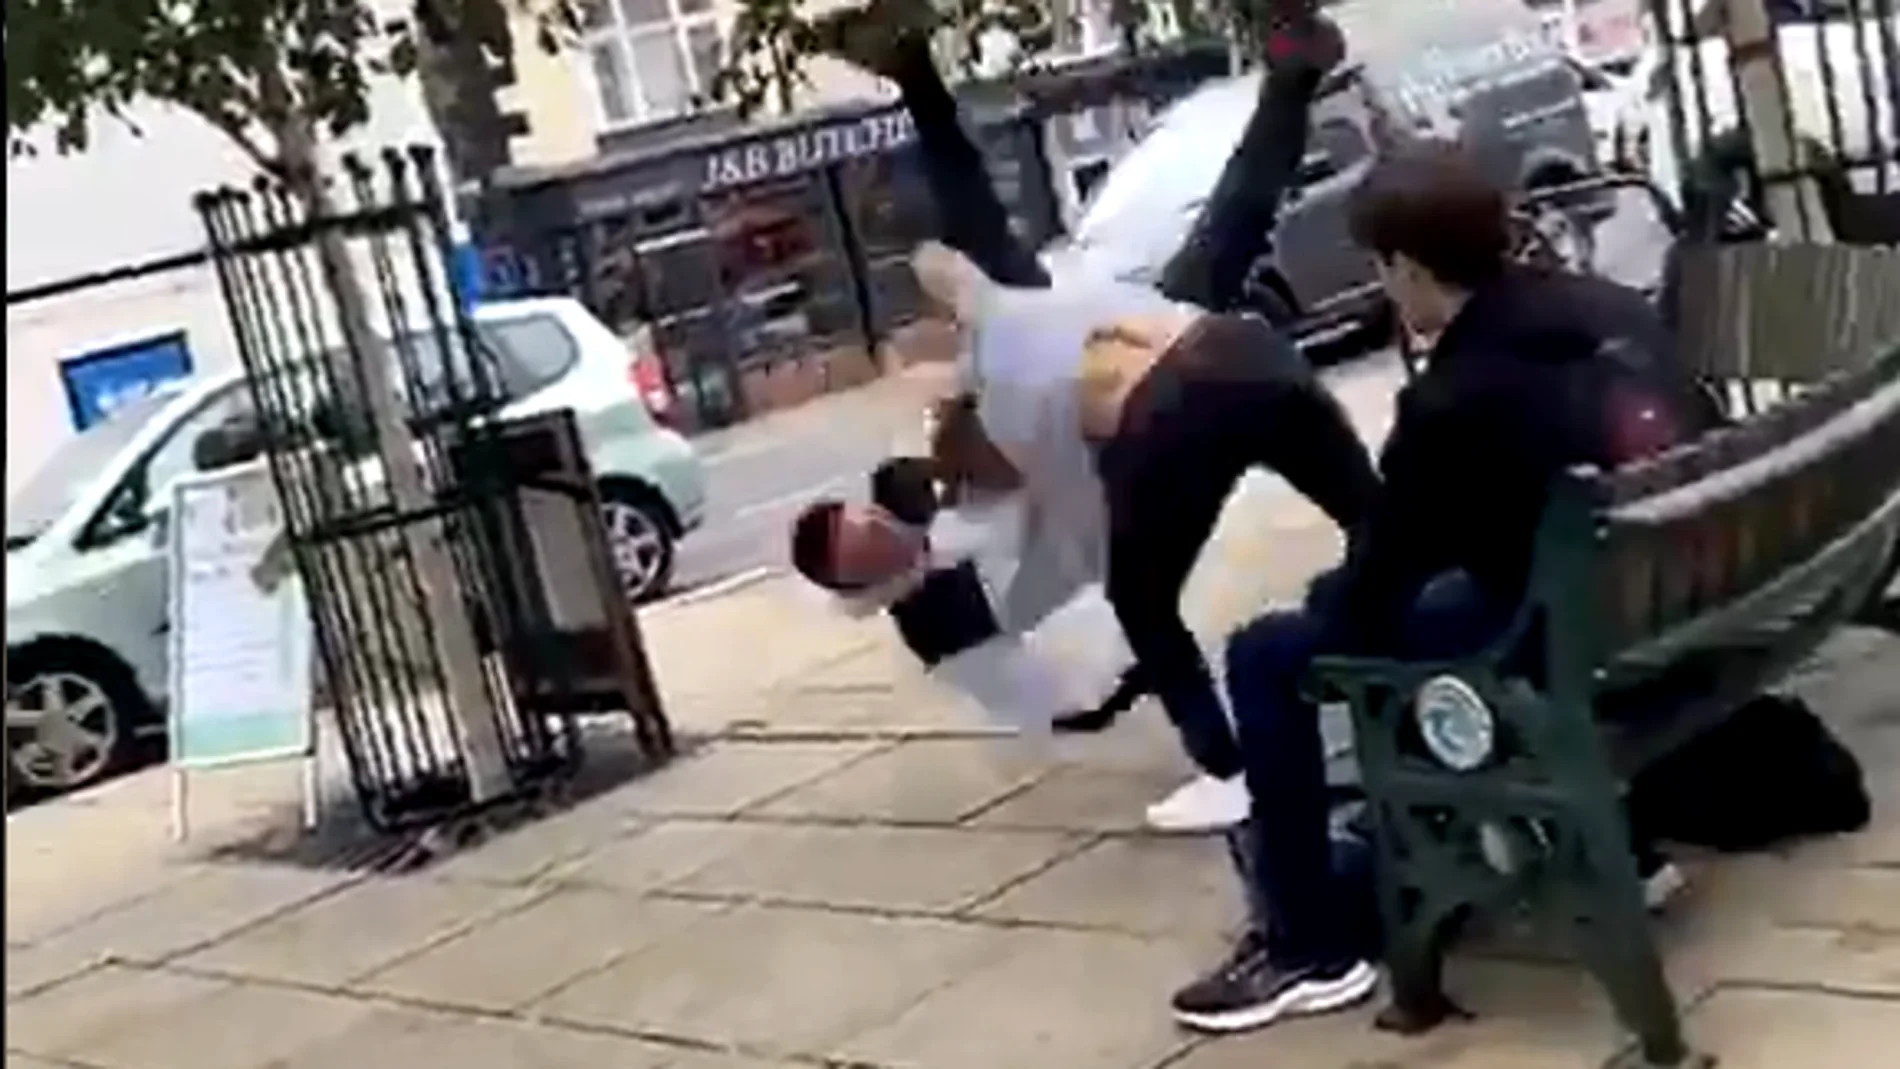 Un hombre recibe una lección tras atacar al campeón del mundo junior de jiu-jitsu en un parque 